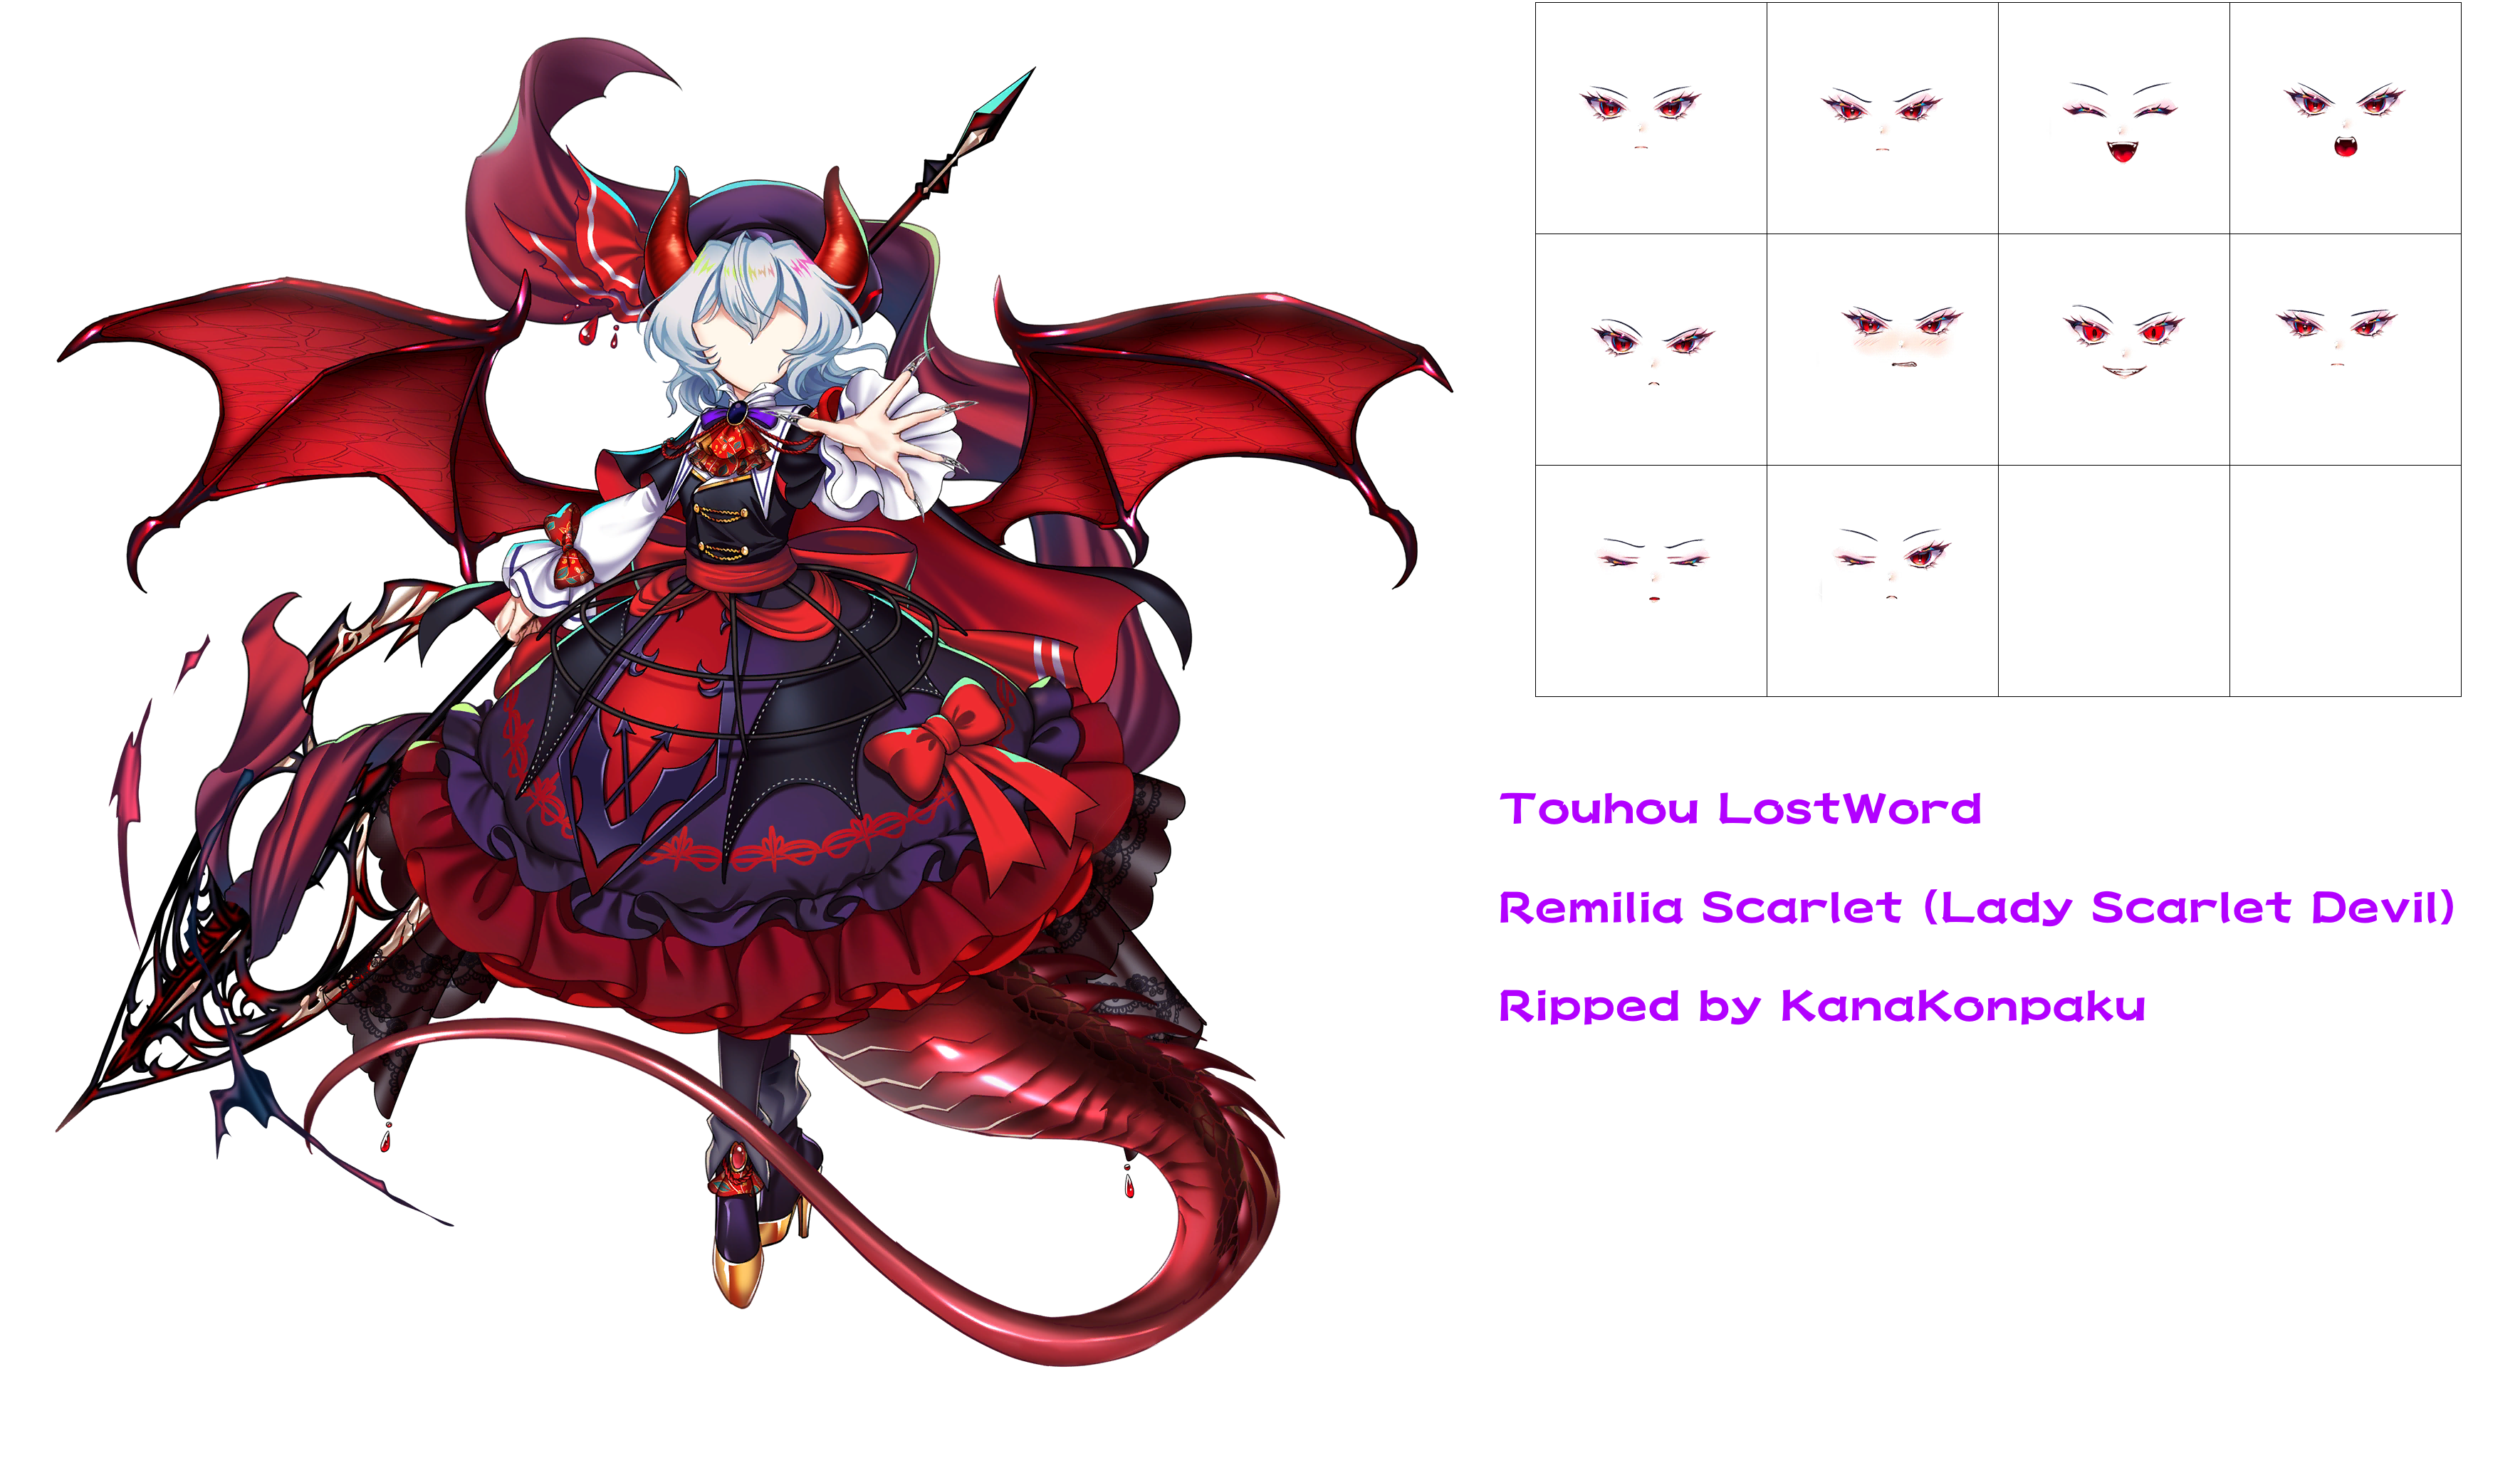 Touhou LostWord - Remilia Scarlet (Lady Scarlet Devil)